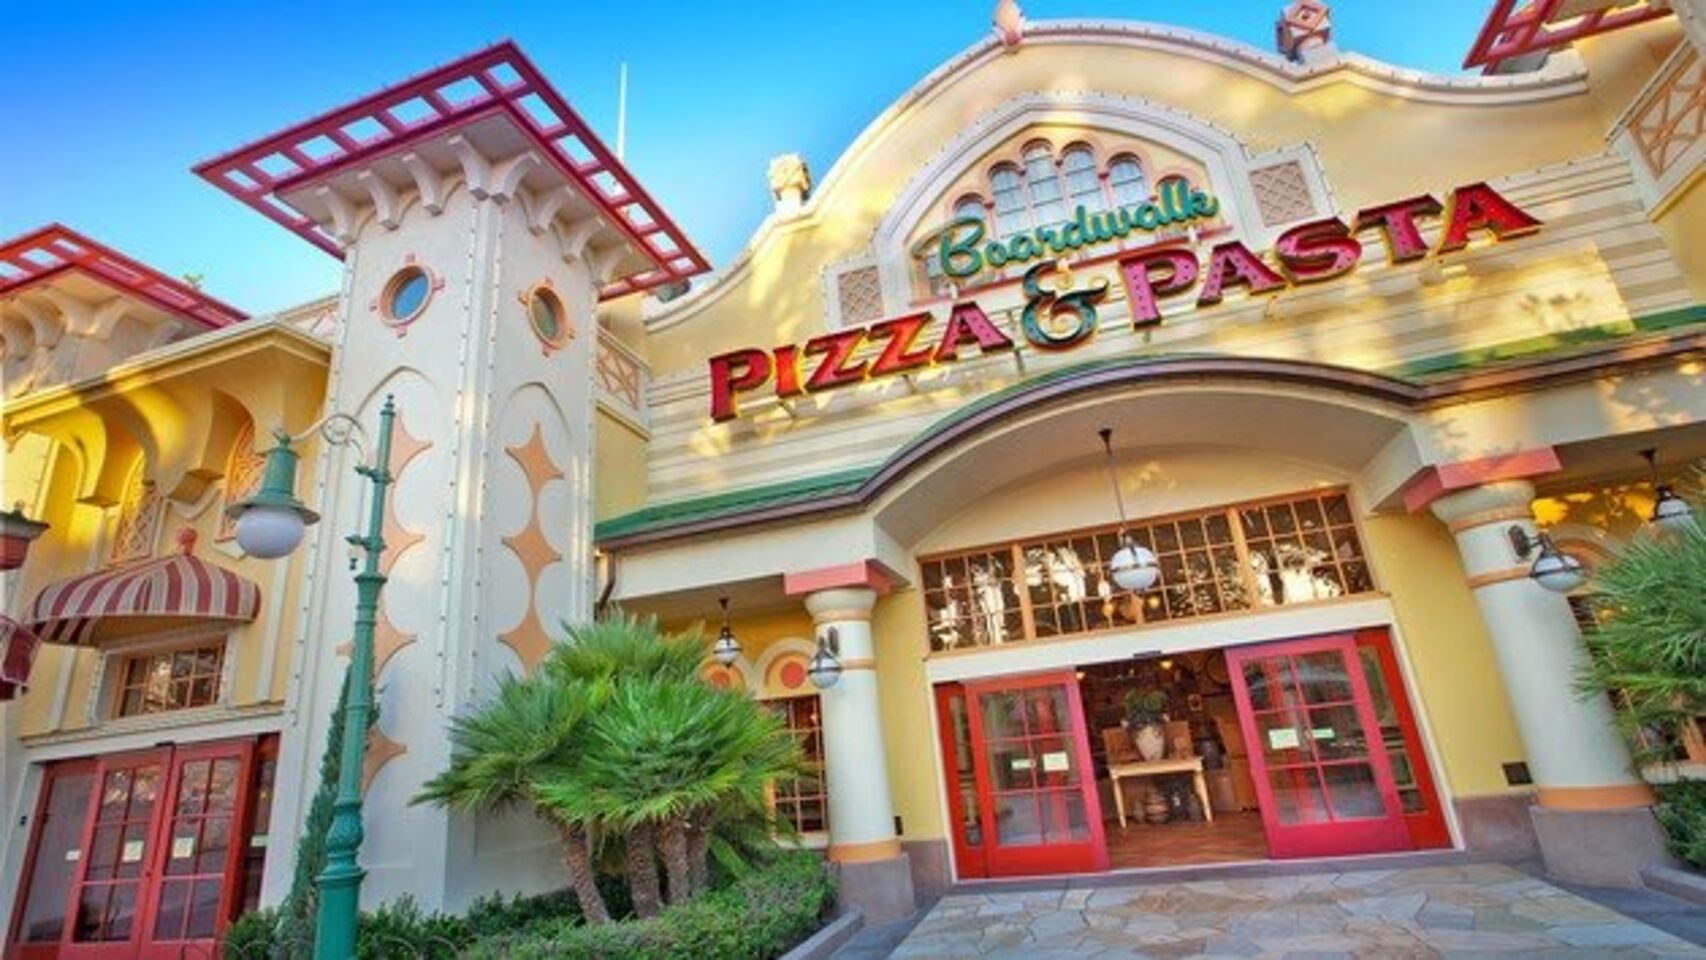 A photo of Boardwalk Pizza & Pasta